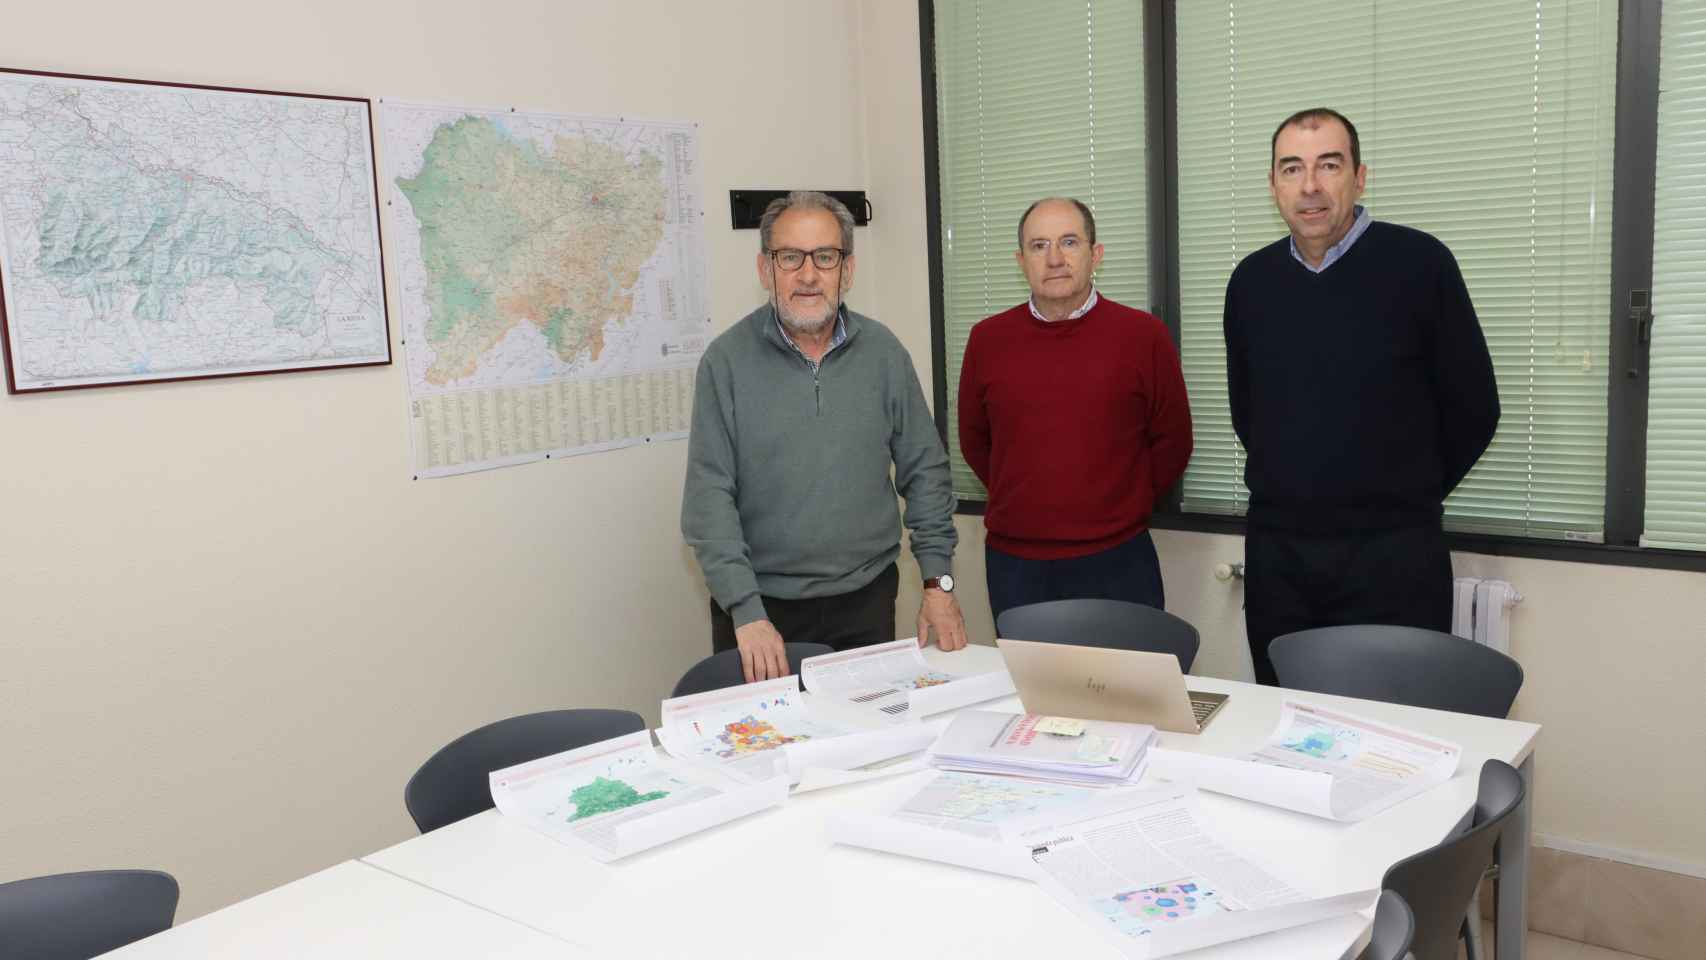 Los investigadores del Departamento de Geografía de la Universidad de Salamanca José Manuel Llorente Pinto, Juan Ignacio Plaza Gutiérrez y José Luis Sánchez Hernández